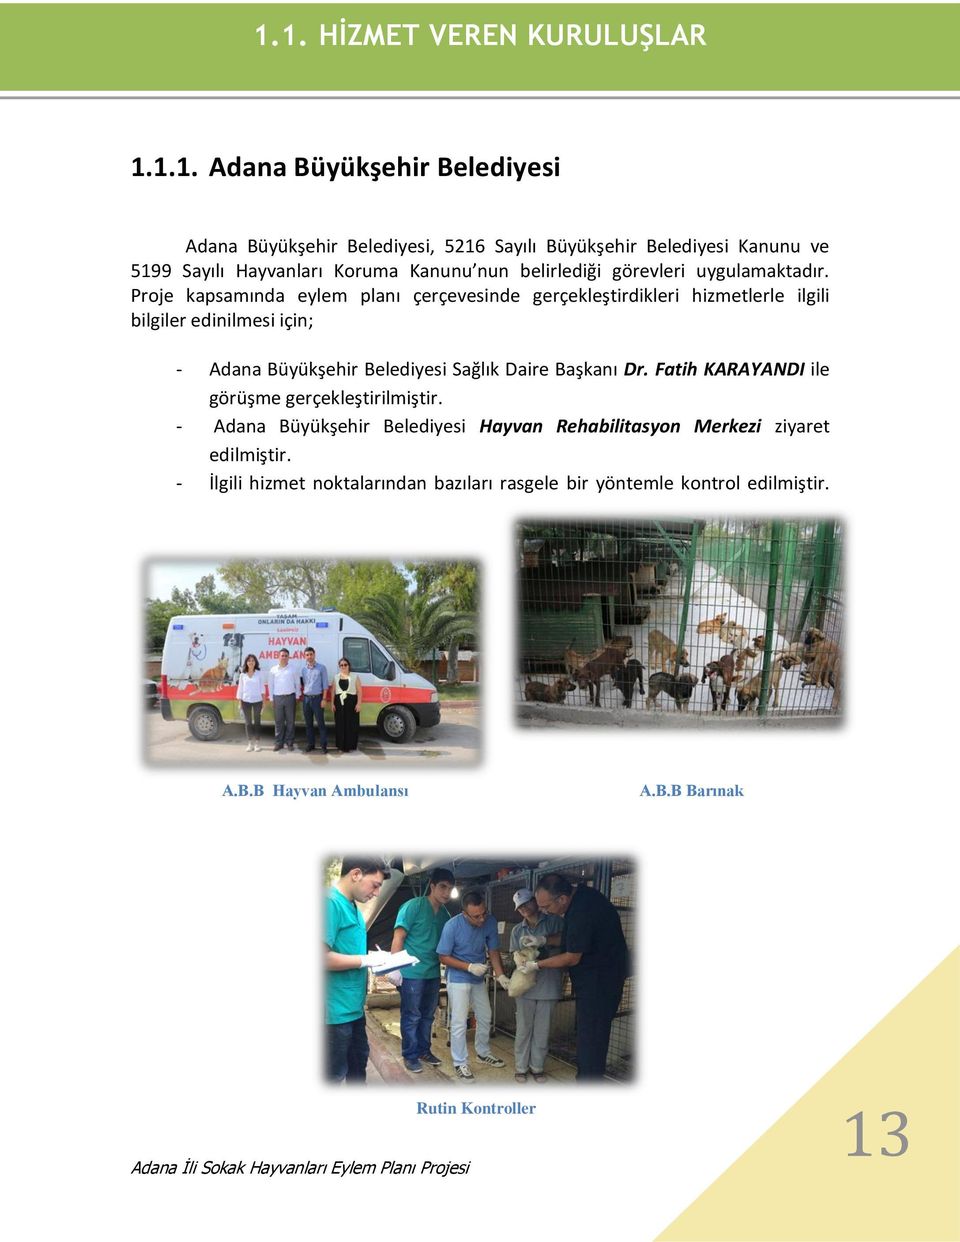 Proje kapsamında eylem planı çerçevesinde gerçekleştirdikleri hizmetlerle ilgili bilgiler edinilmesi için; - Adana Büyükşehir Belediyesi Sağlık Daire Başkanı Dr.